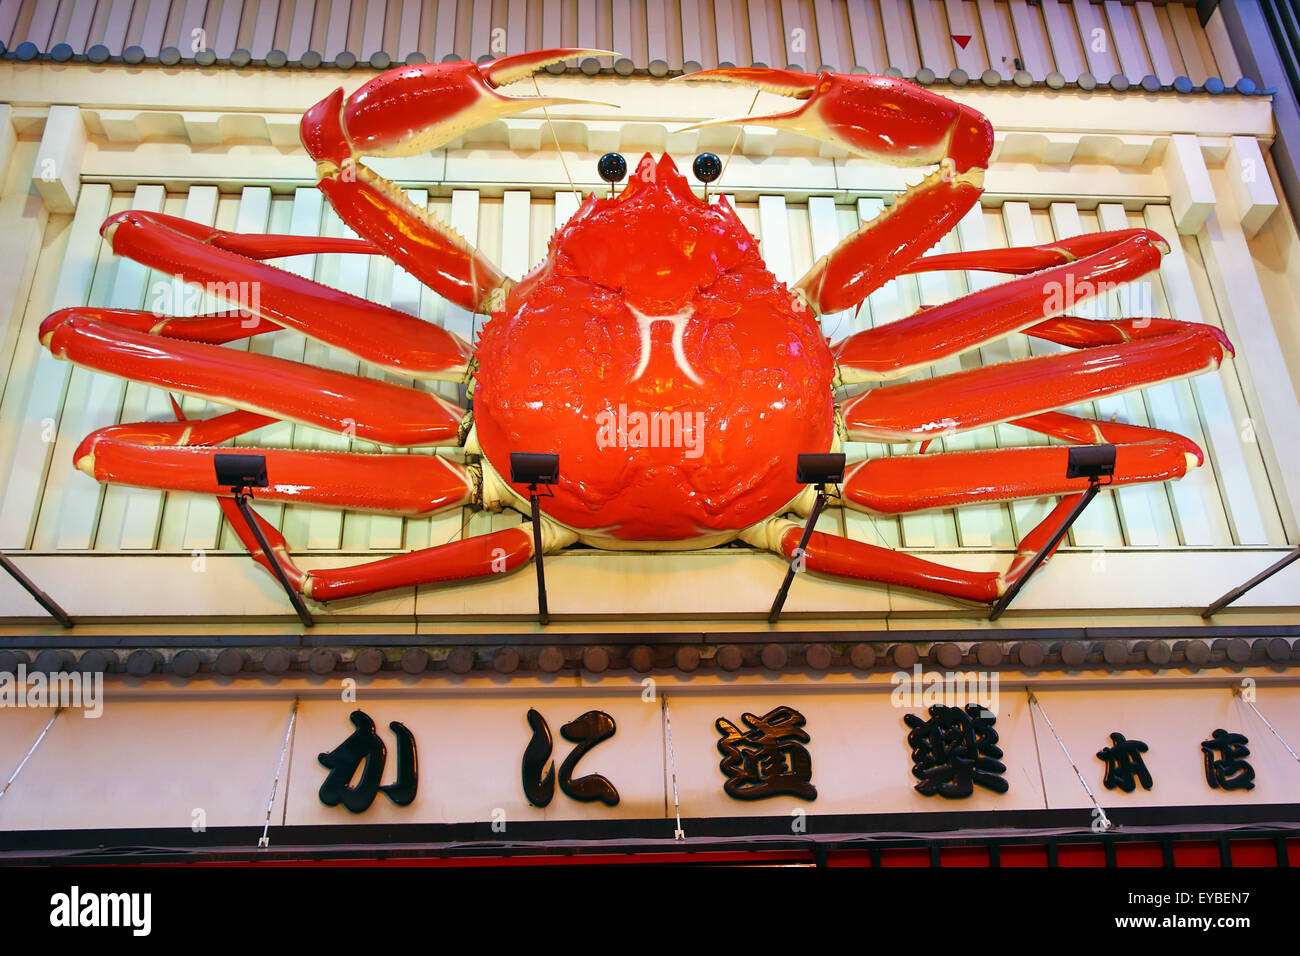 Kani Doraku seafood restaurant crab sign in Namba, Osaka, Japan Stock Photo